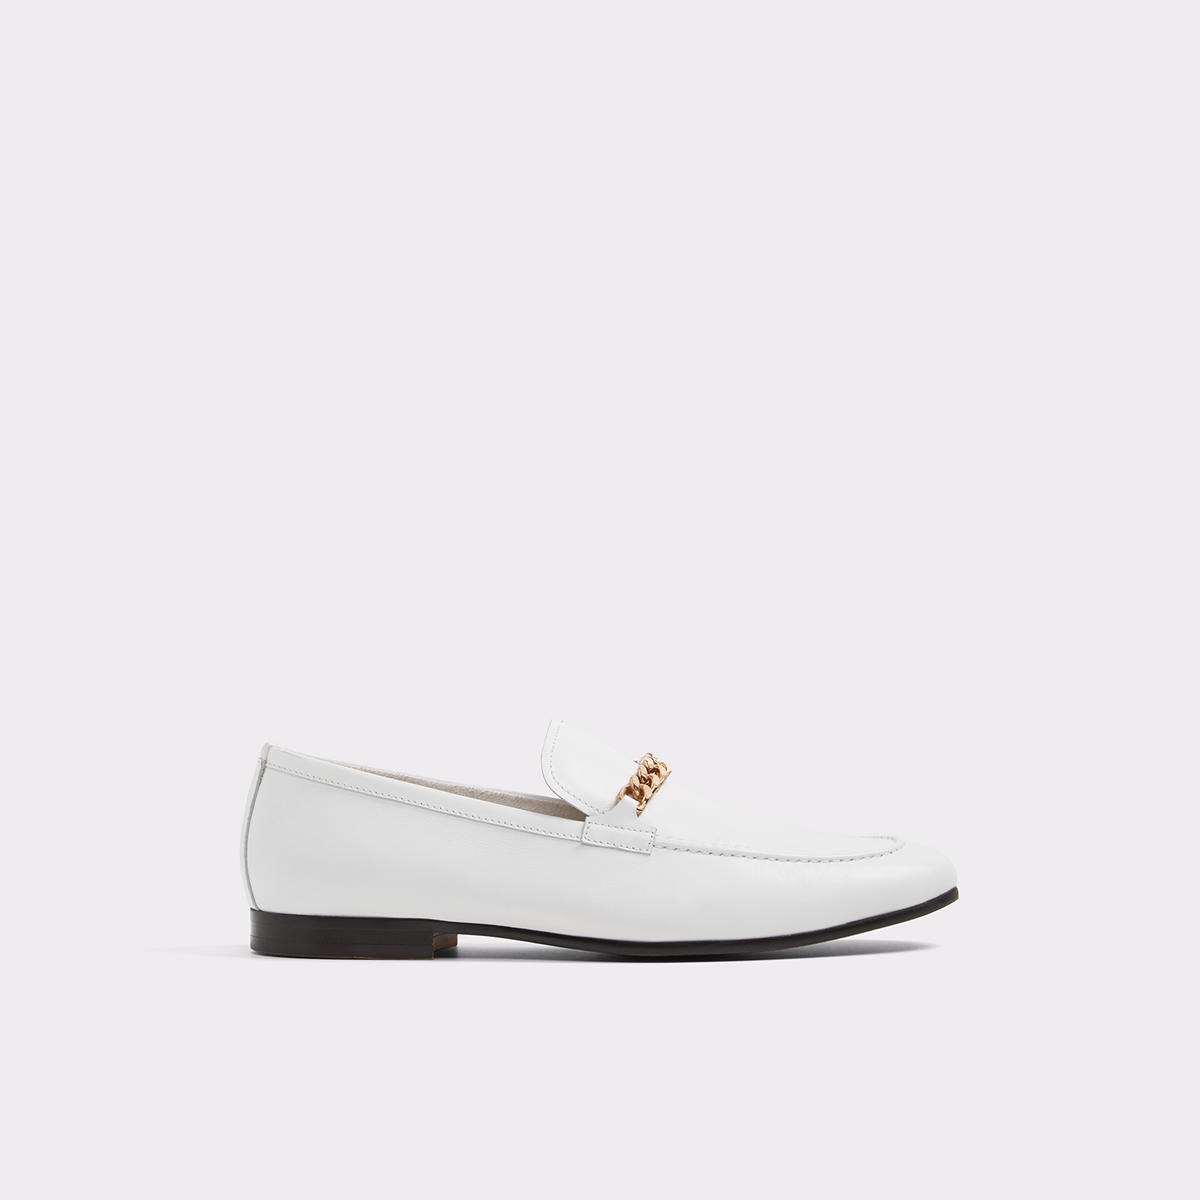 Royton White Men's Dress shoes | Aldoshoes.com US